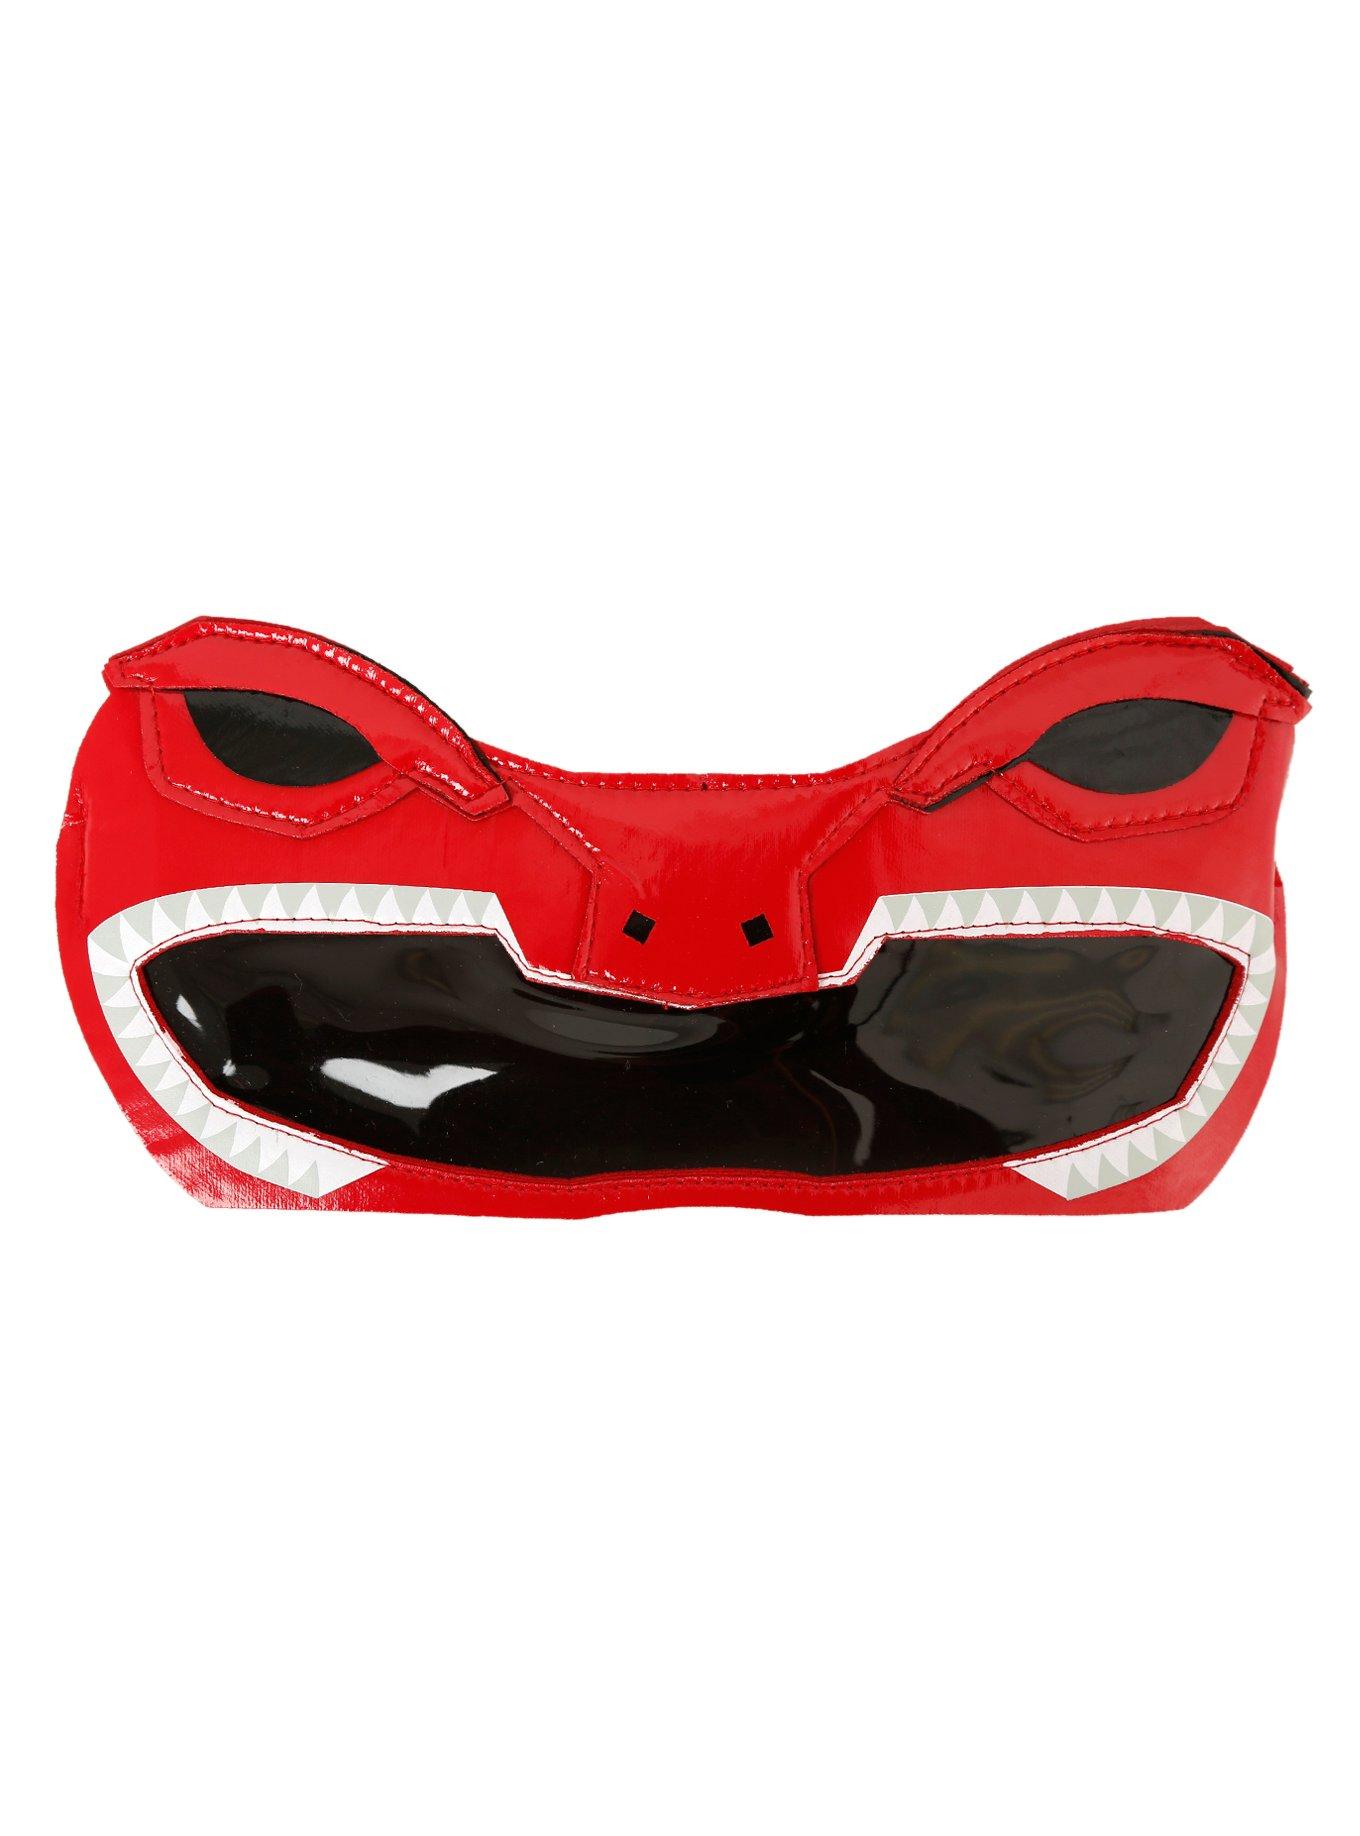 Mighty Morphin Power Rangers Red Ranger Eye Mask, , alternate